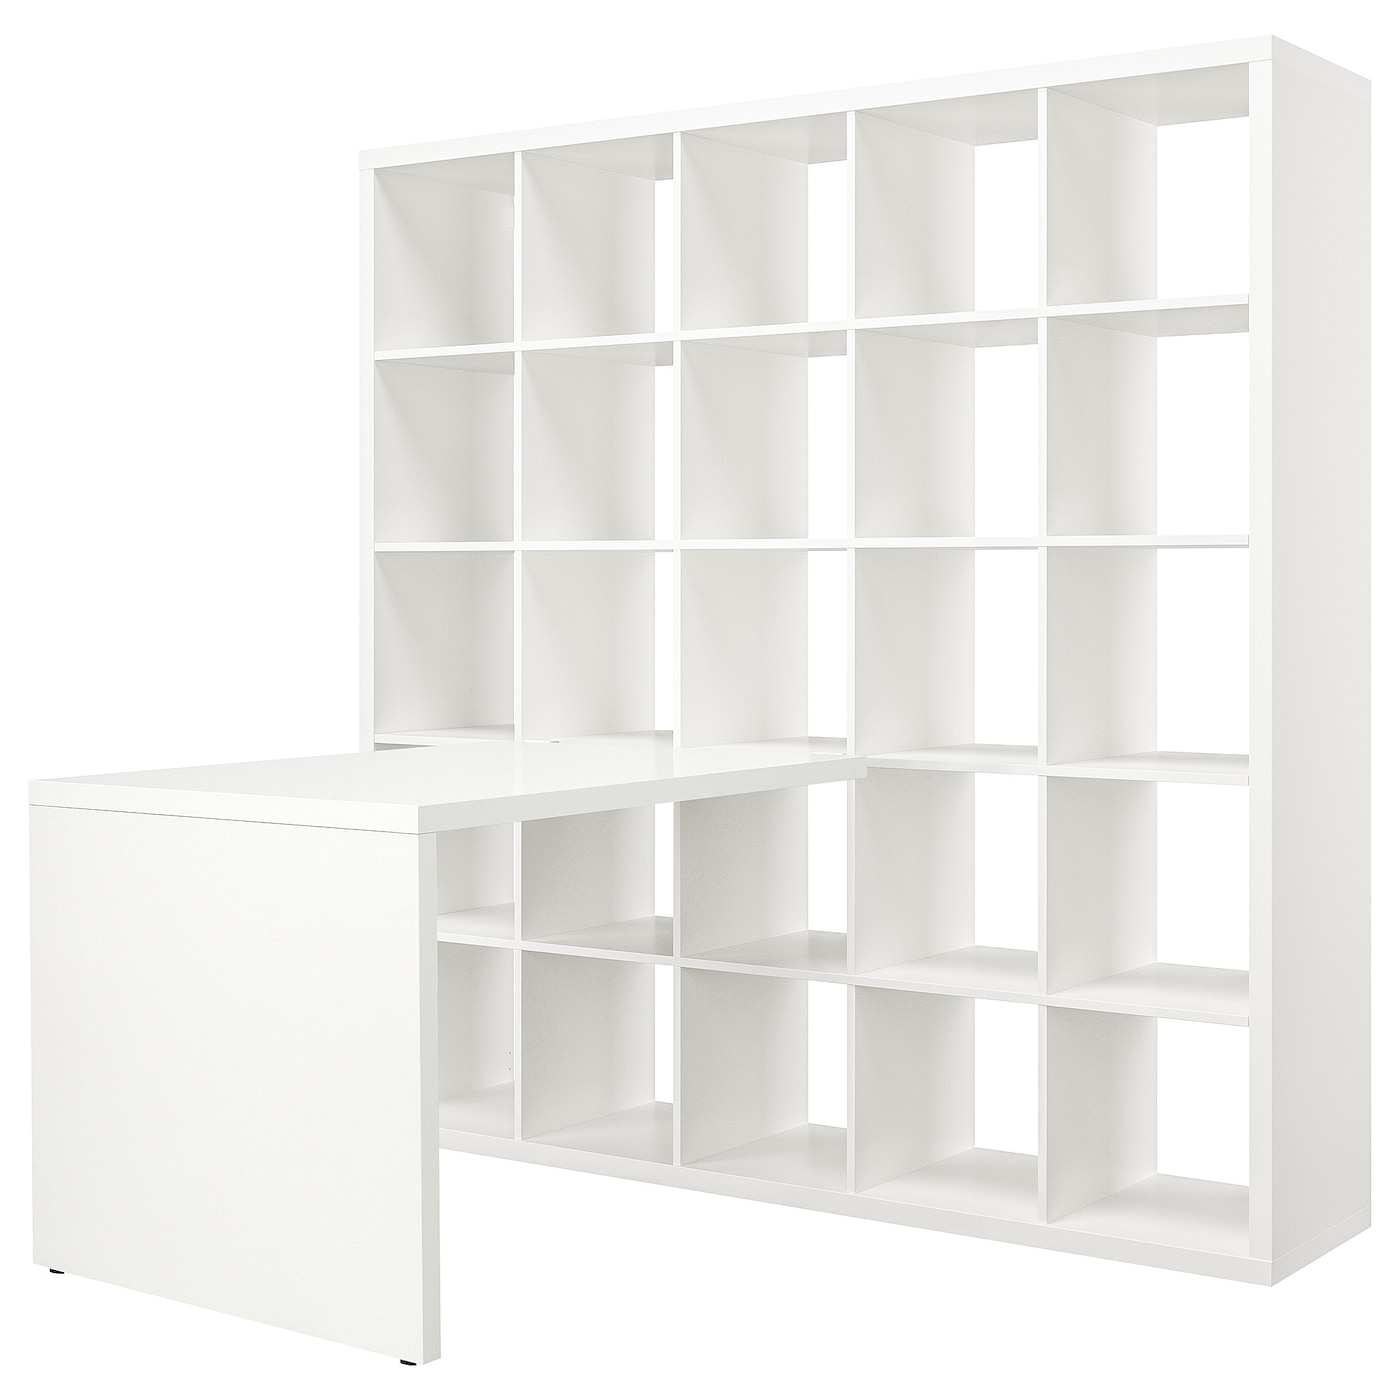 Письменный стол и стеллаж - IKEA KALLAX, 182x154x182 см, белый, КАЛЛАКС ИКЕА